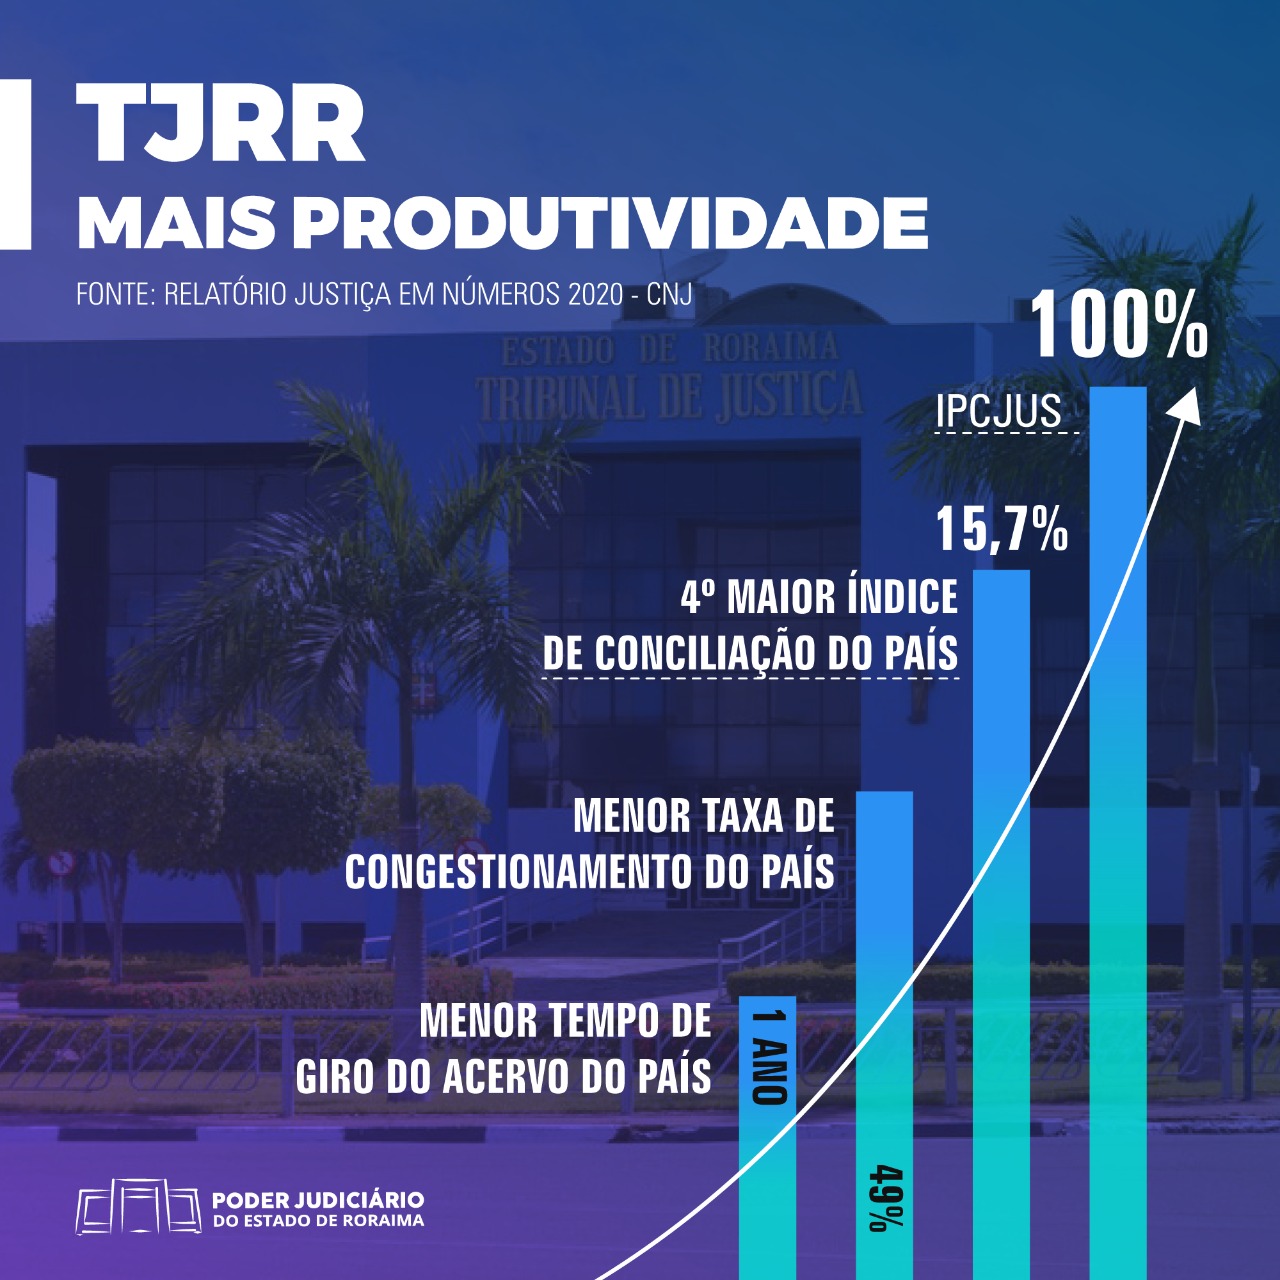 IPC-JUS 100% - TJRR atinge produtividade máxima pela quinta vez